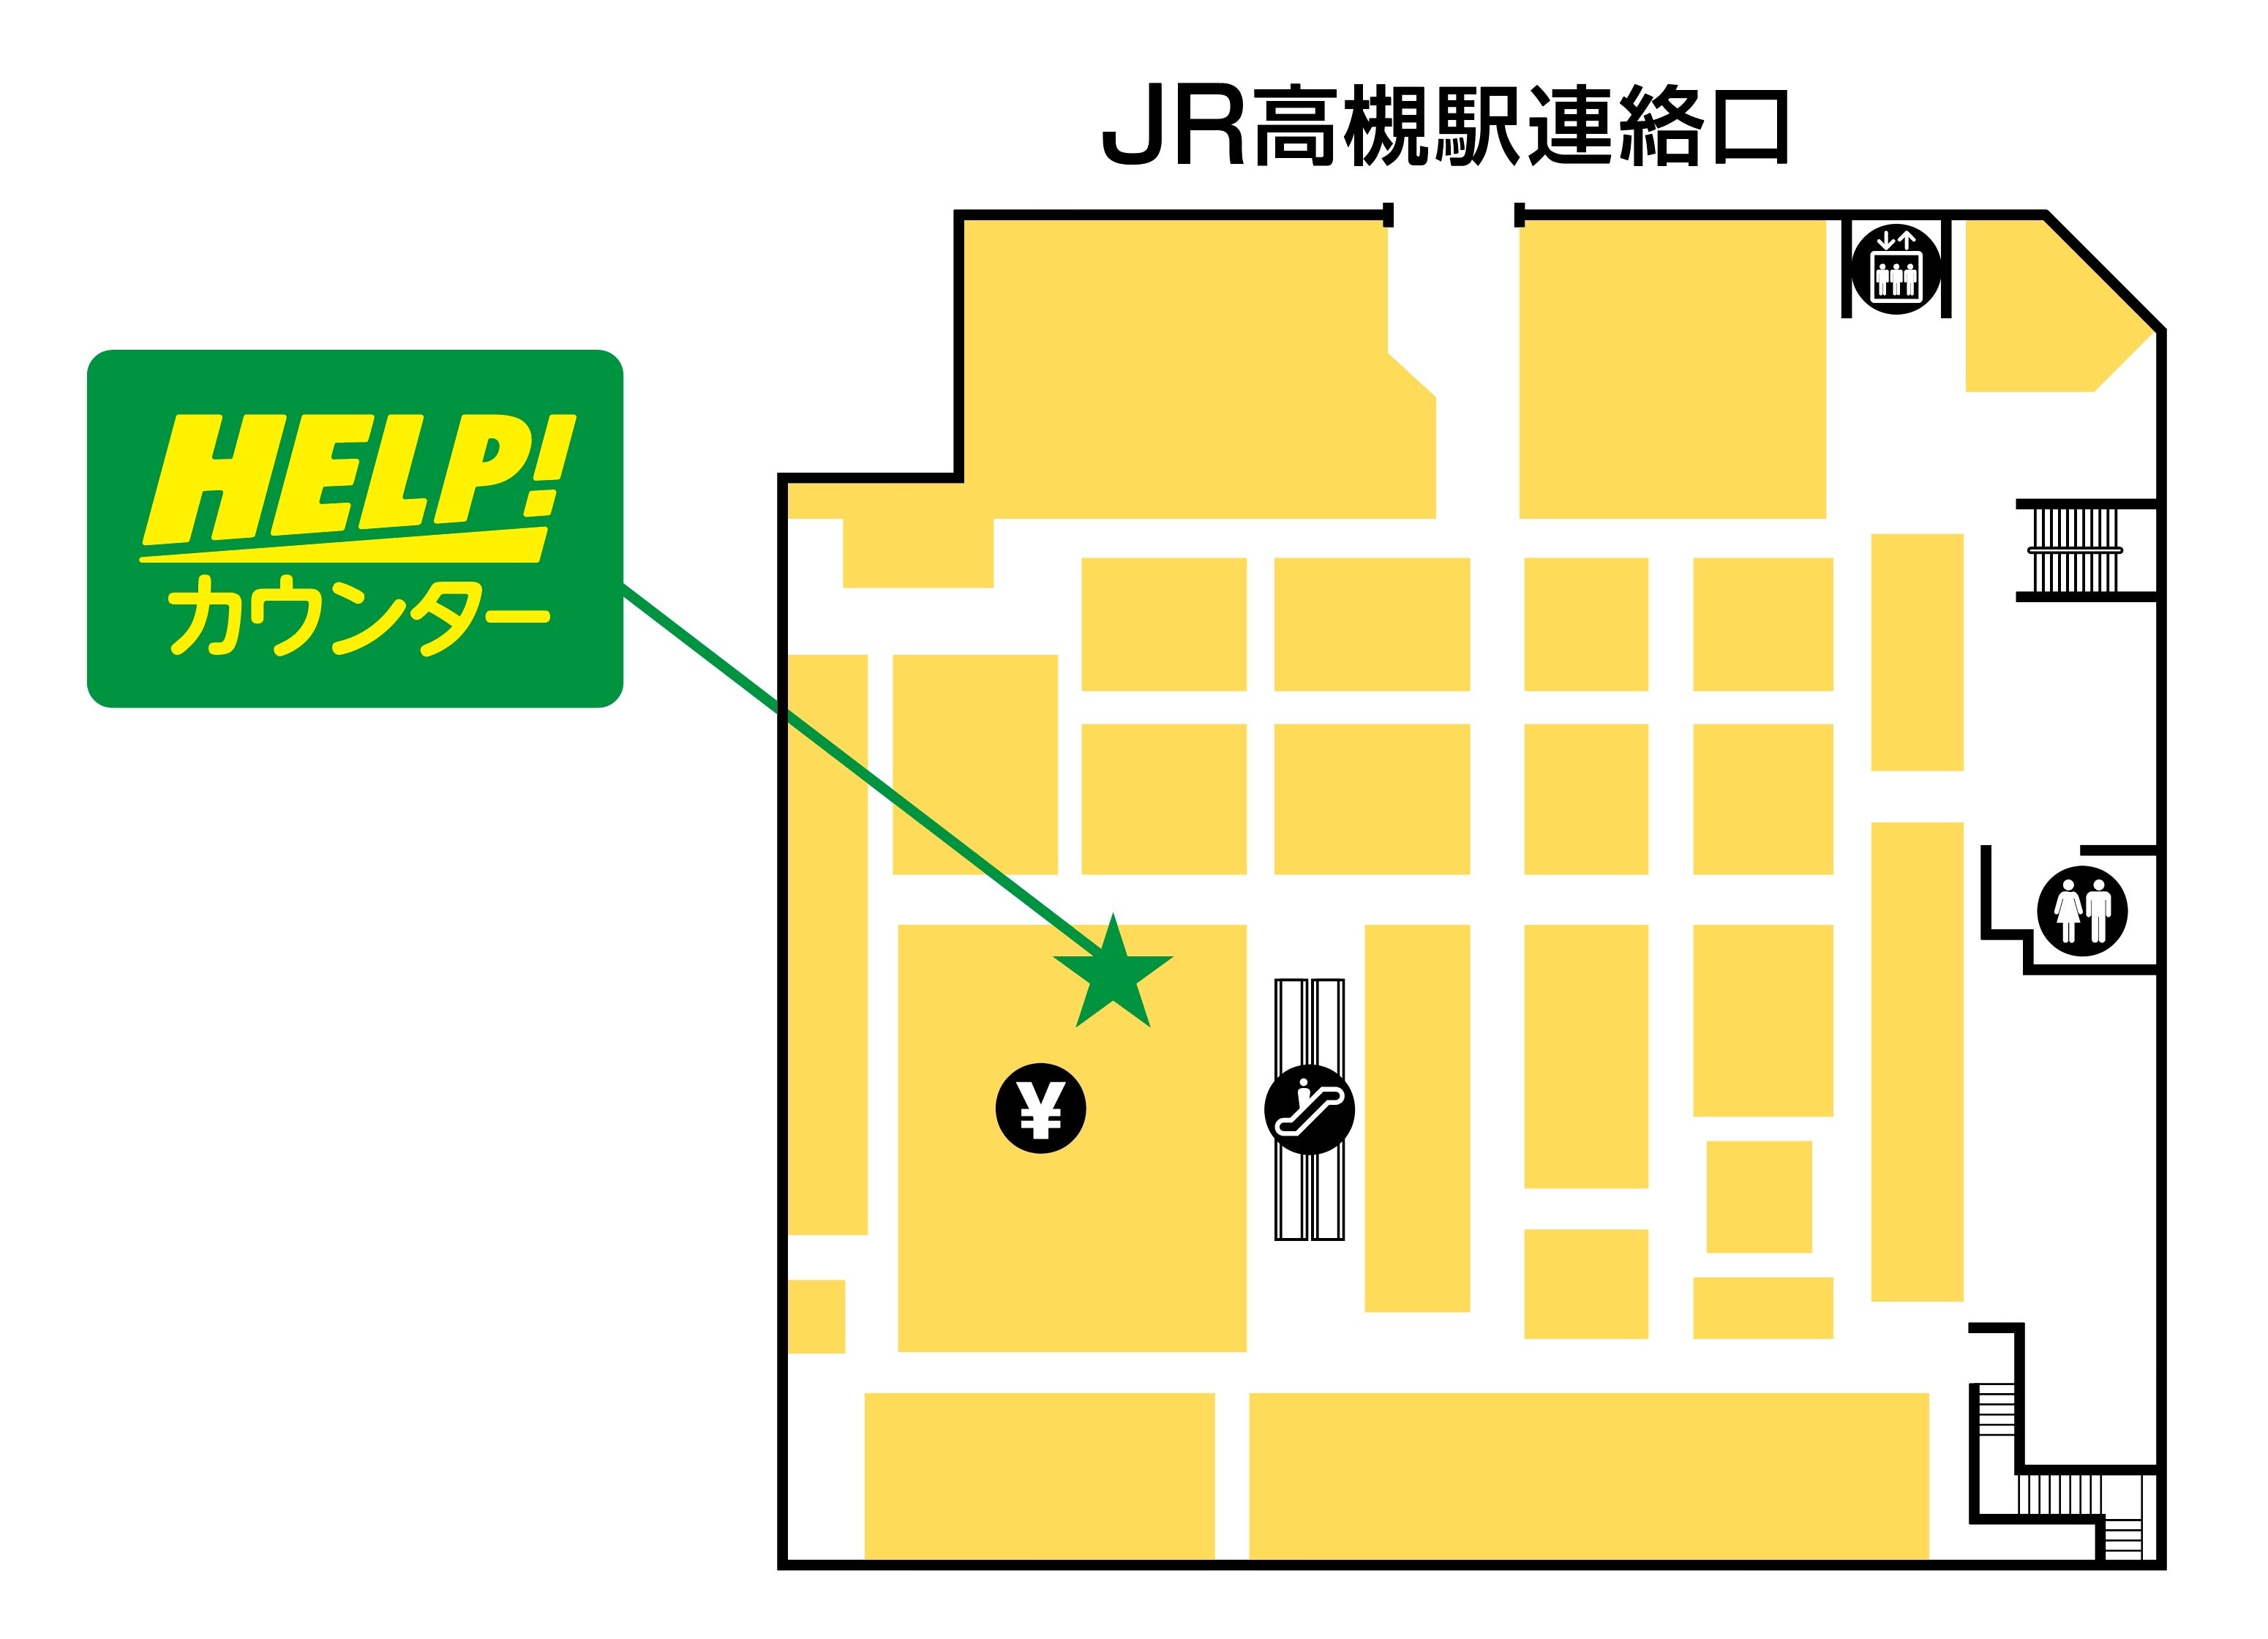 松坂屋高槻店 HELP!カウンター地図